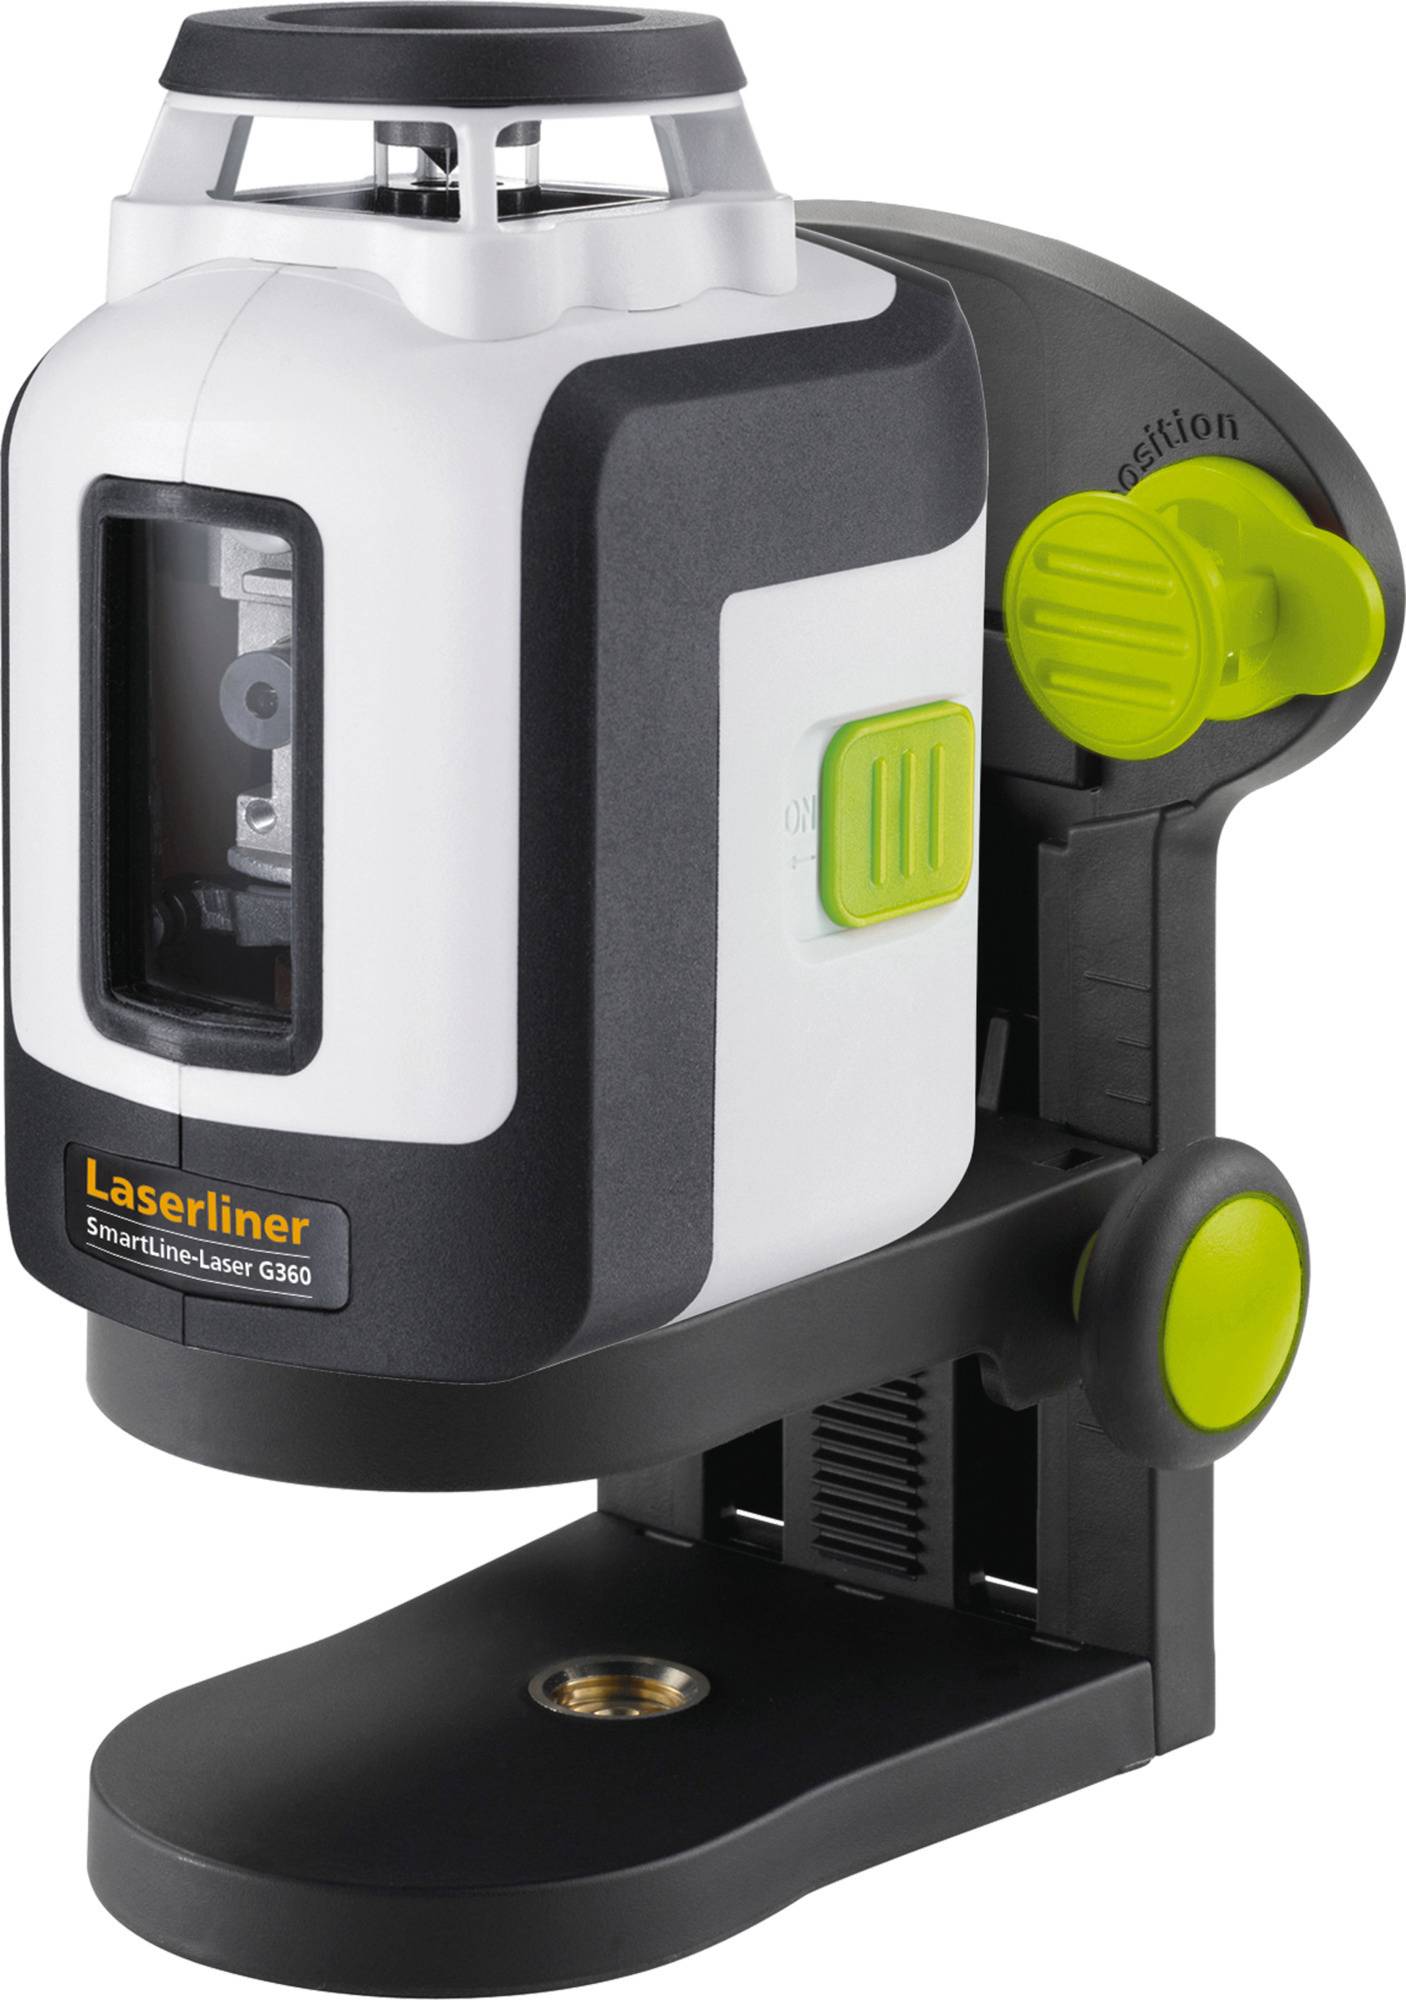 LASERLINER SmartLine-Laser G360 Linienlaser selbstnivellierend